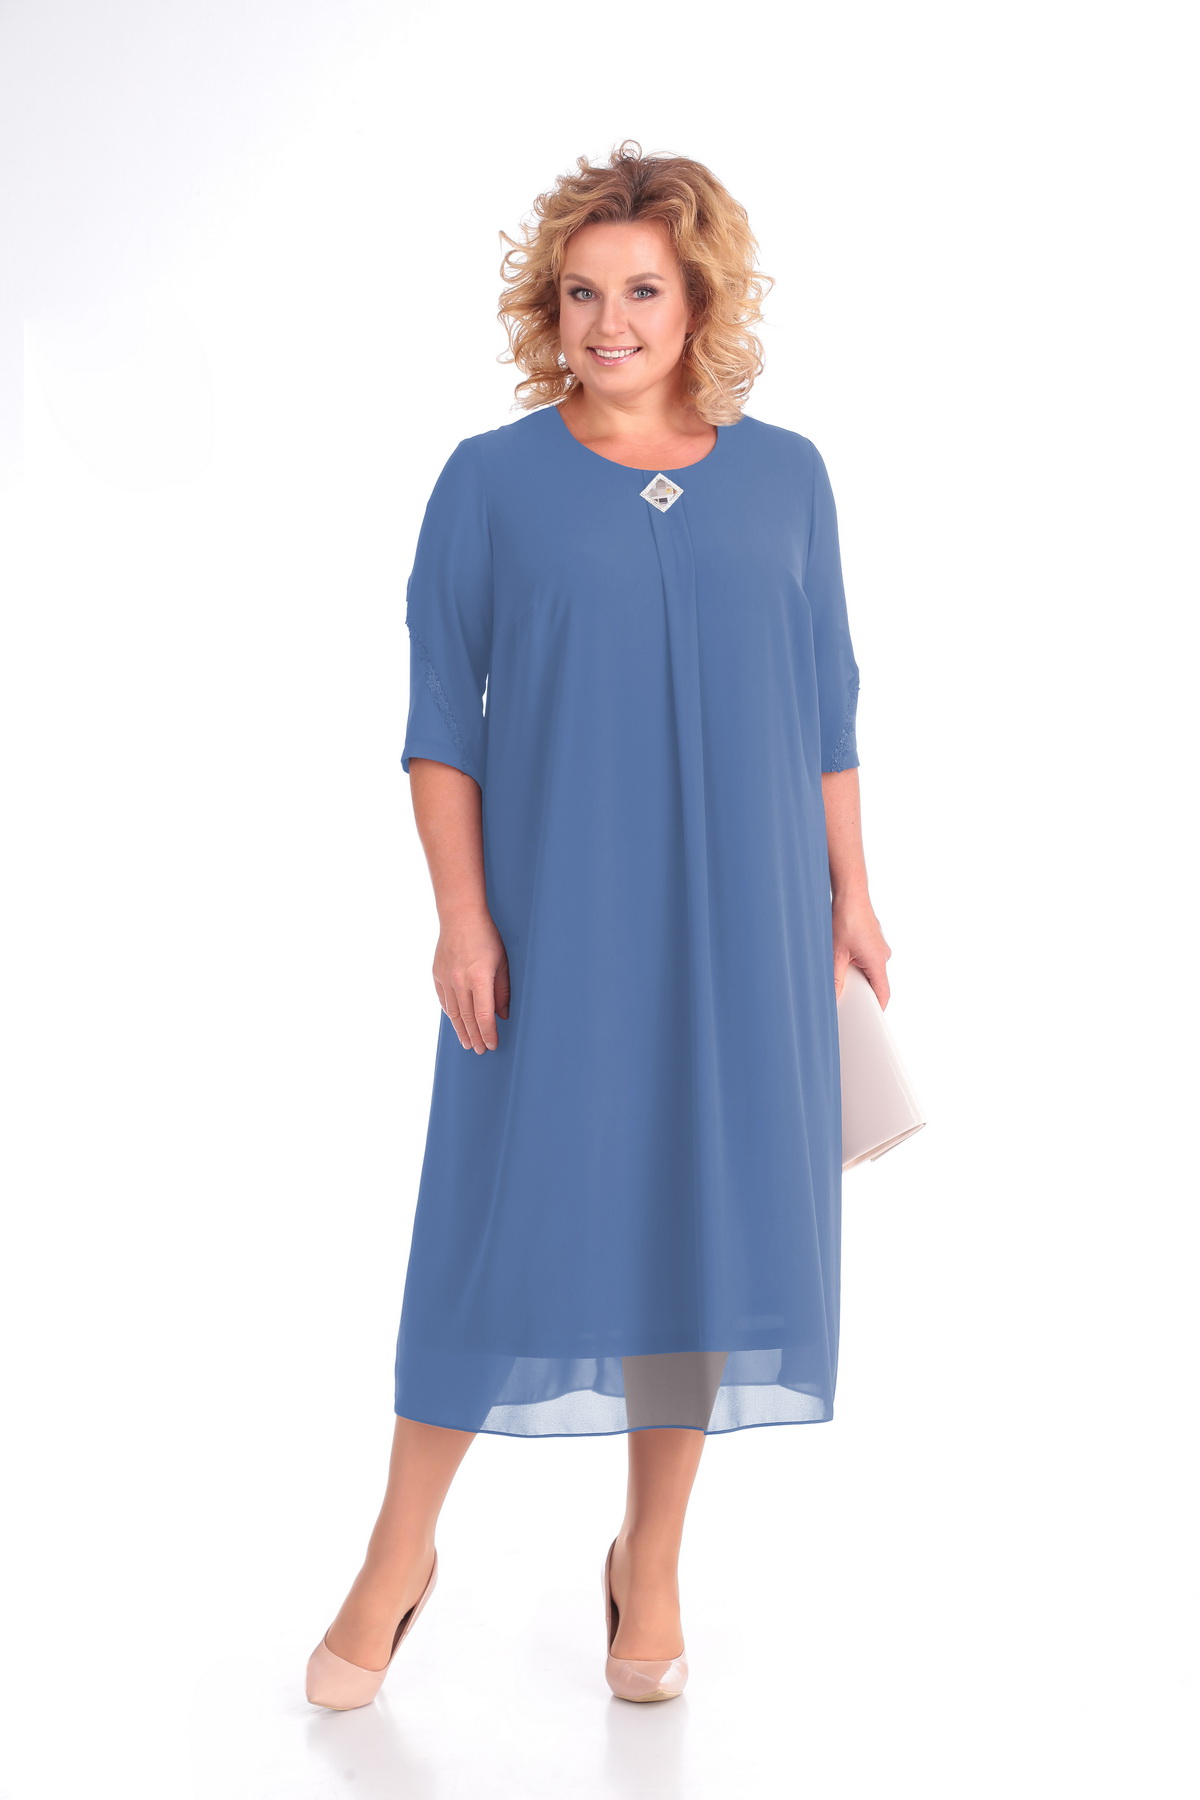 Шелковое платье с коротким рукавом и украшением, голубое